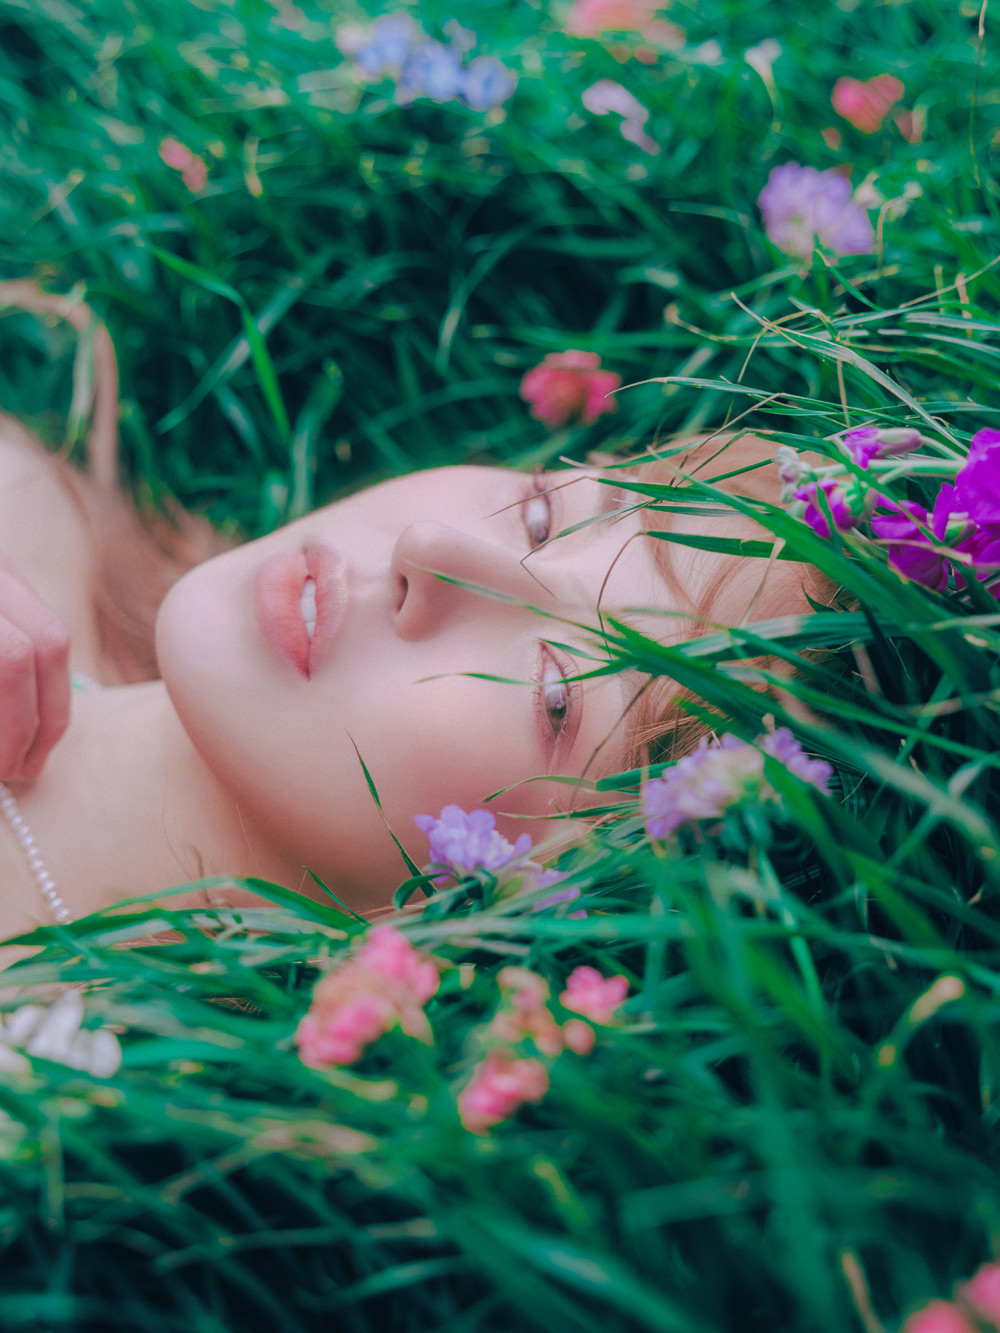 [Соло-дебют] Венди альбом "Like Water": музыкальный клип "Like Water"